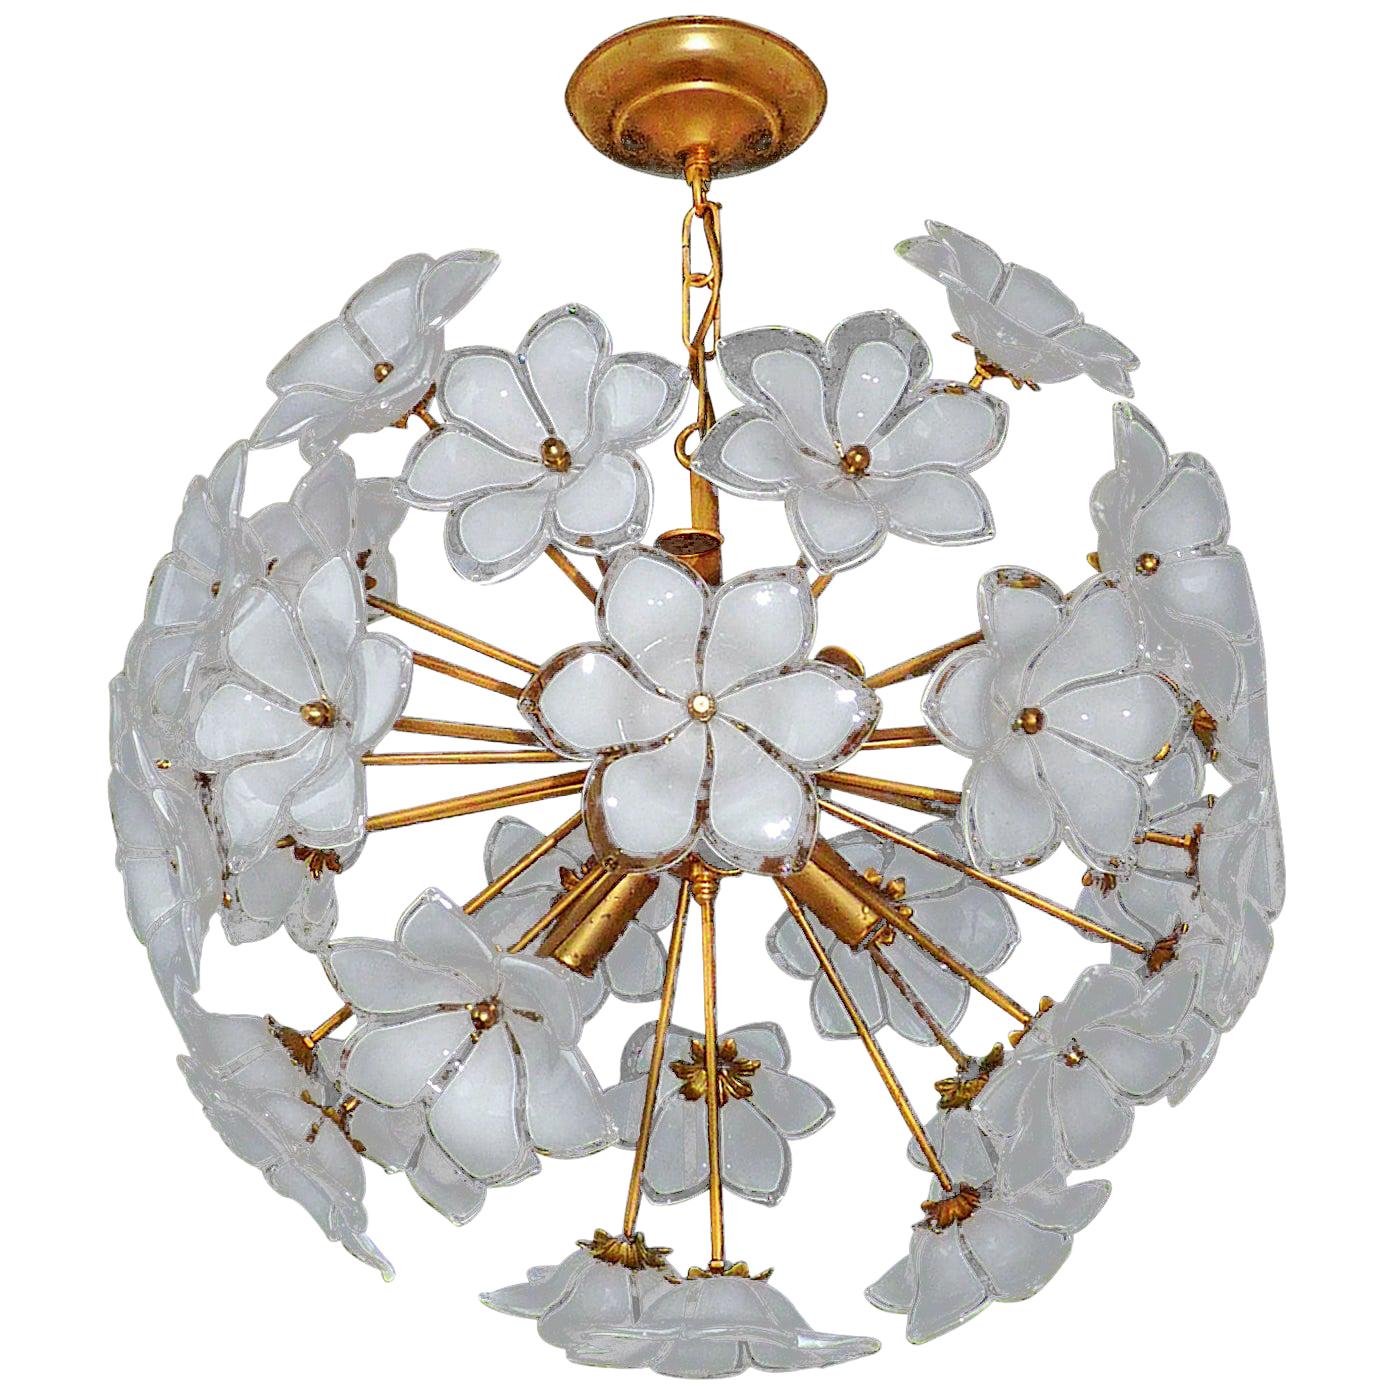 Modernist Italian Murano Flower Bouquet Art Glass Gilt Brass Sputnik Chandelier